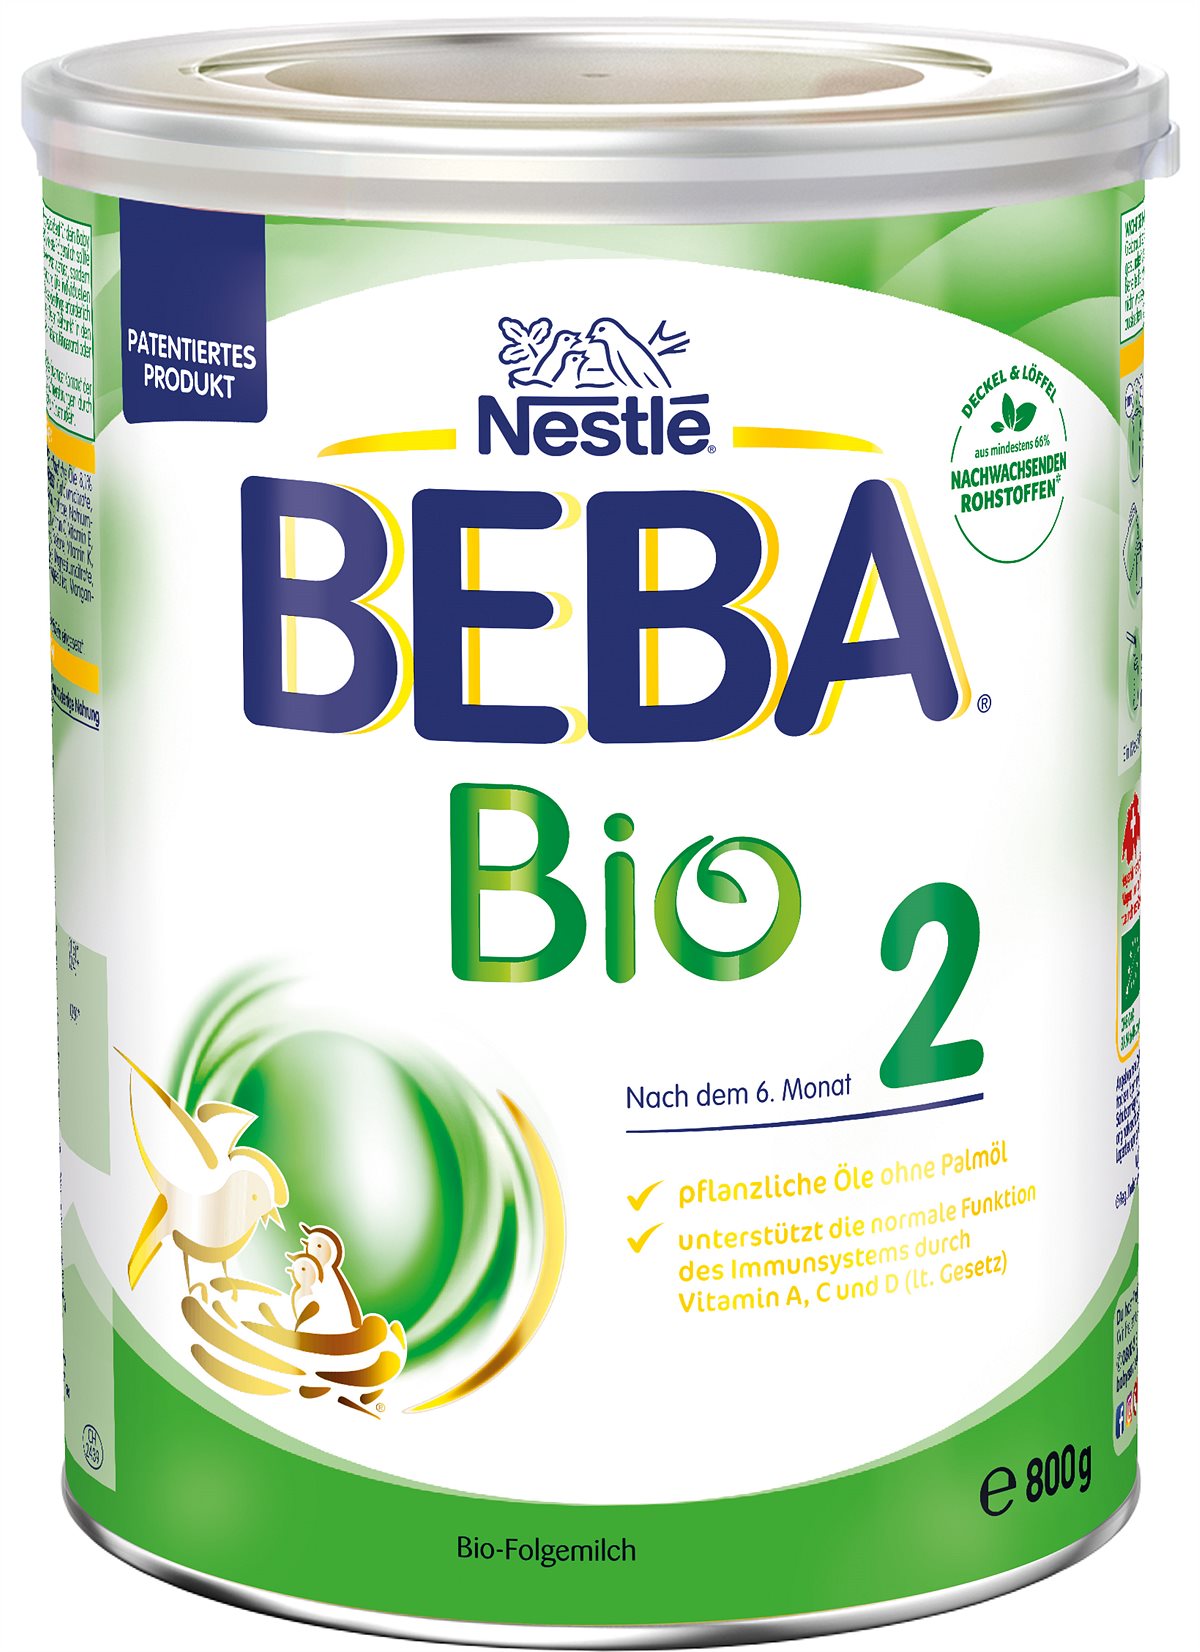 Nestlé BEBA Bio 